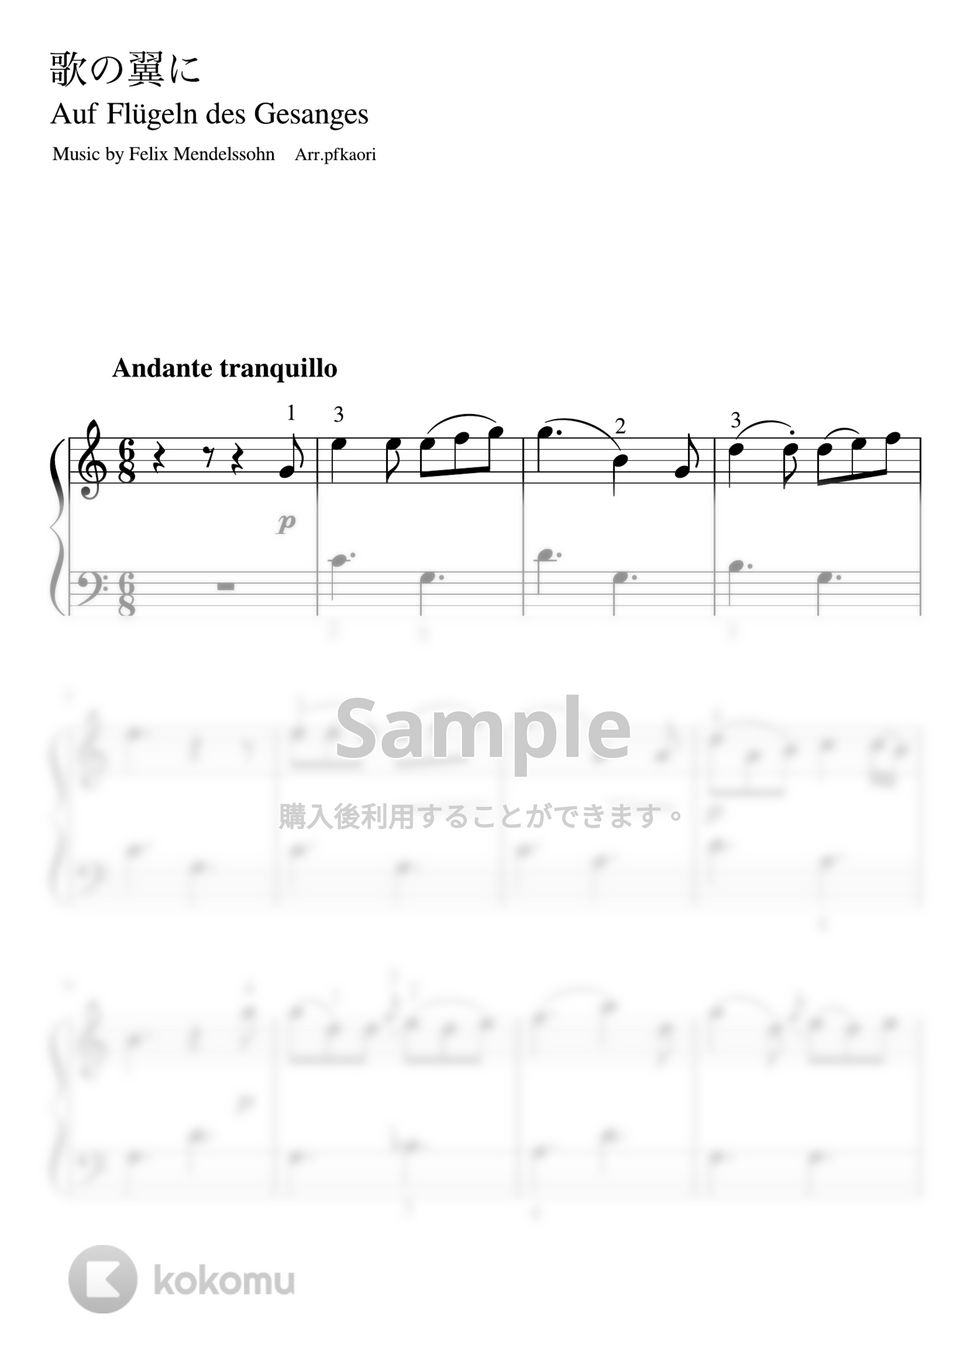 メンデルスゾーン - 歌の翼に (Cdur・ピアノソロ初級) by pfkaori